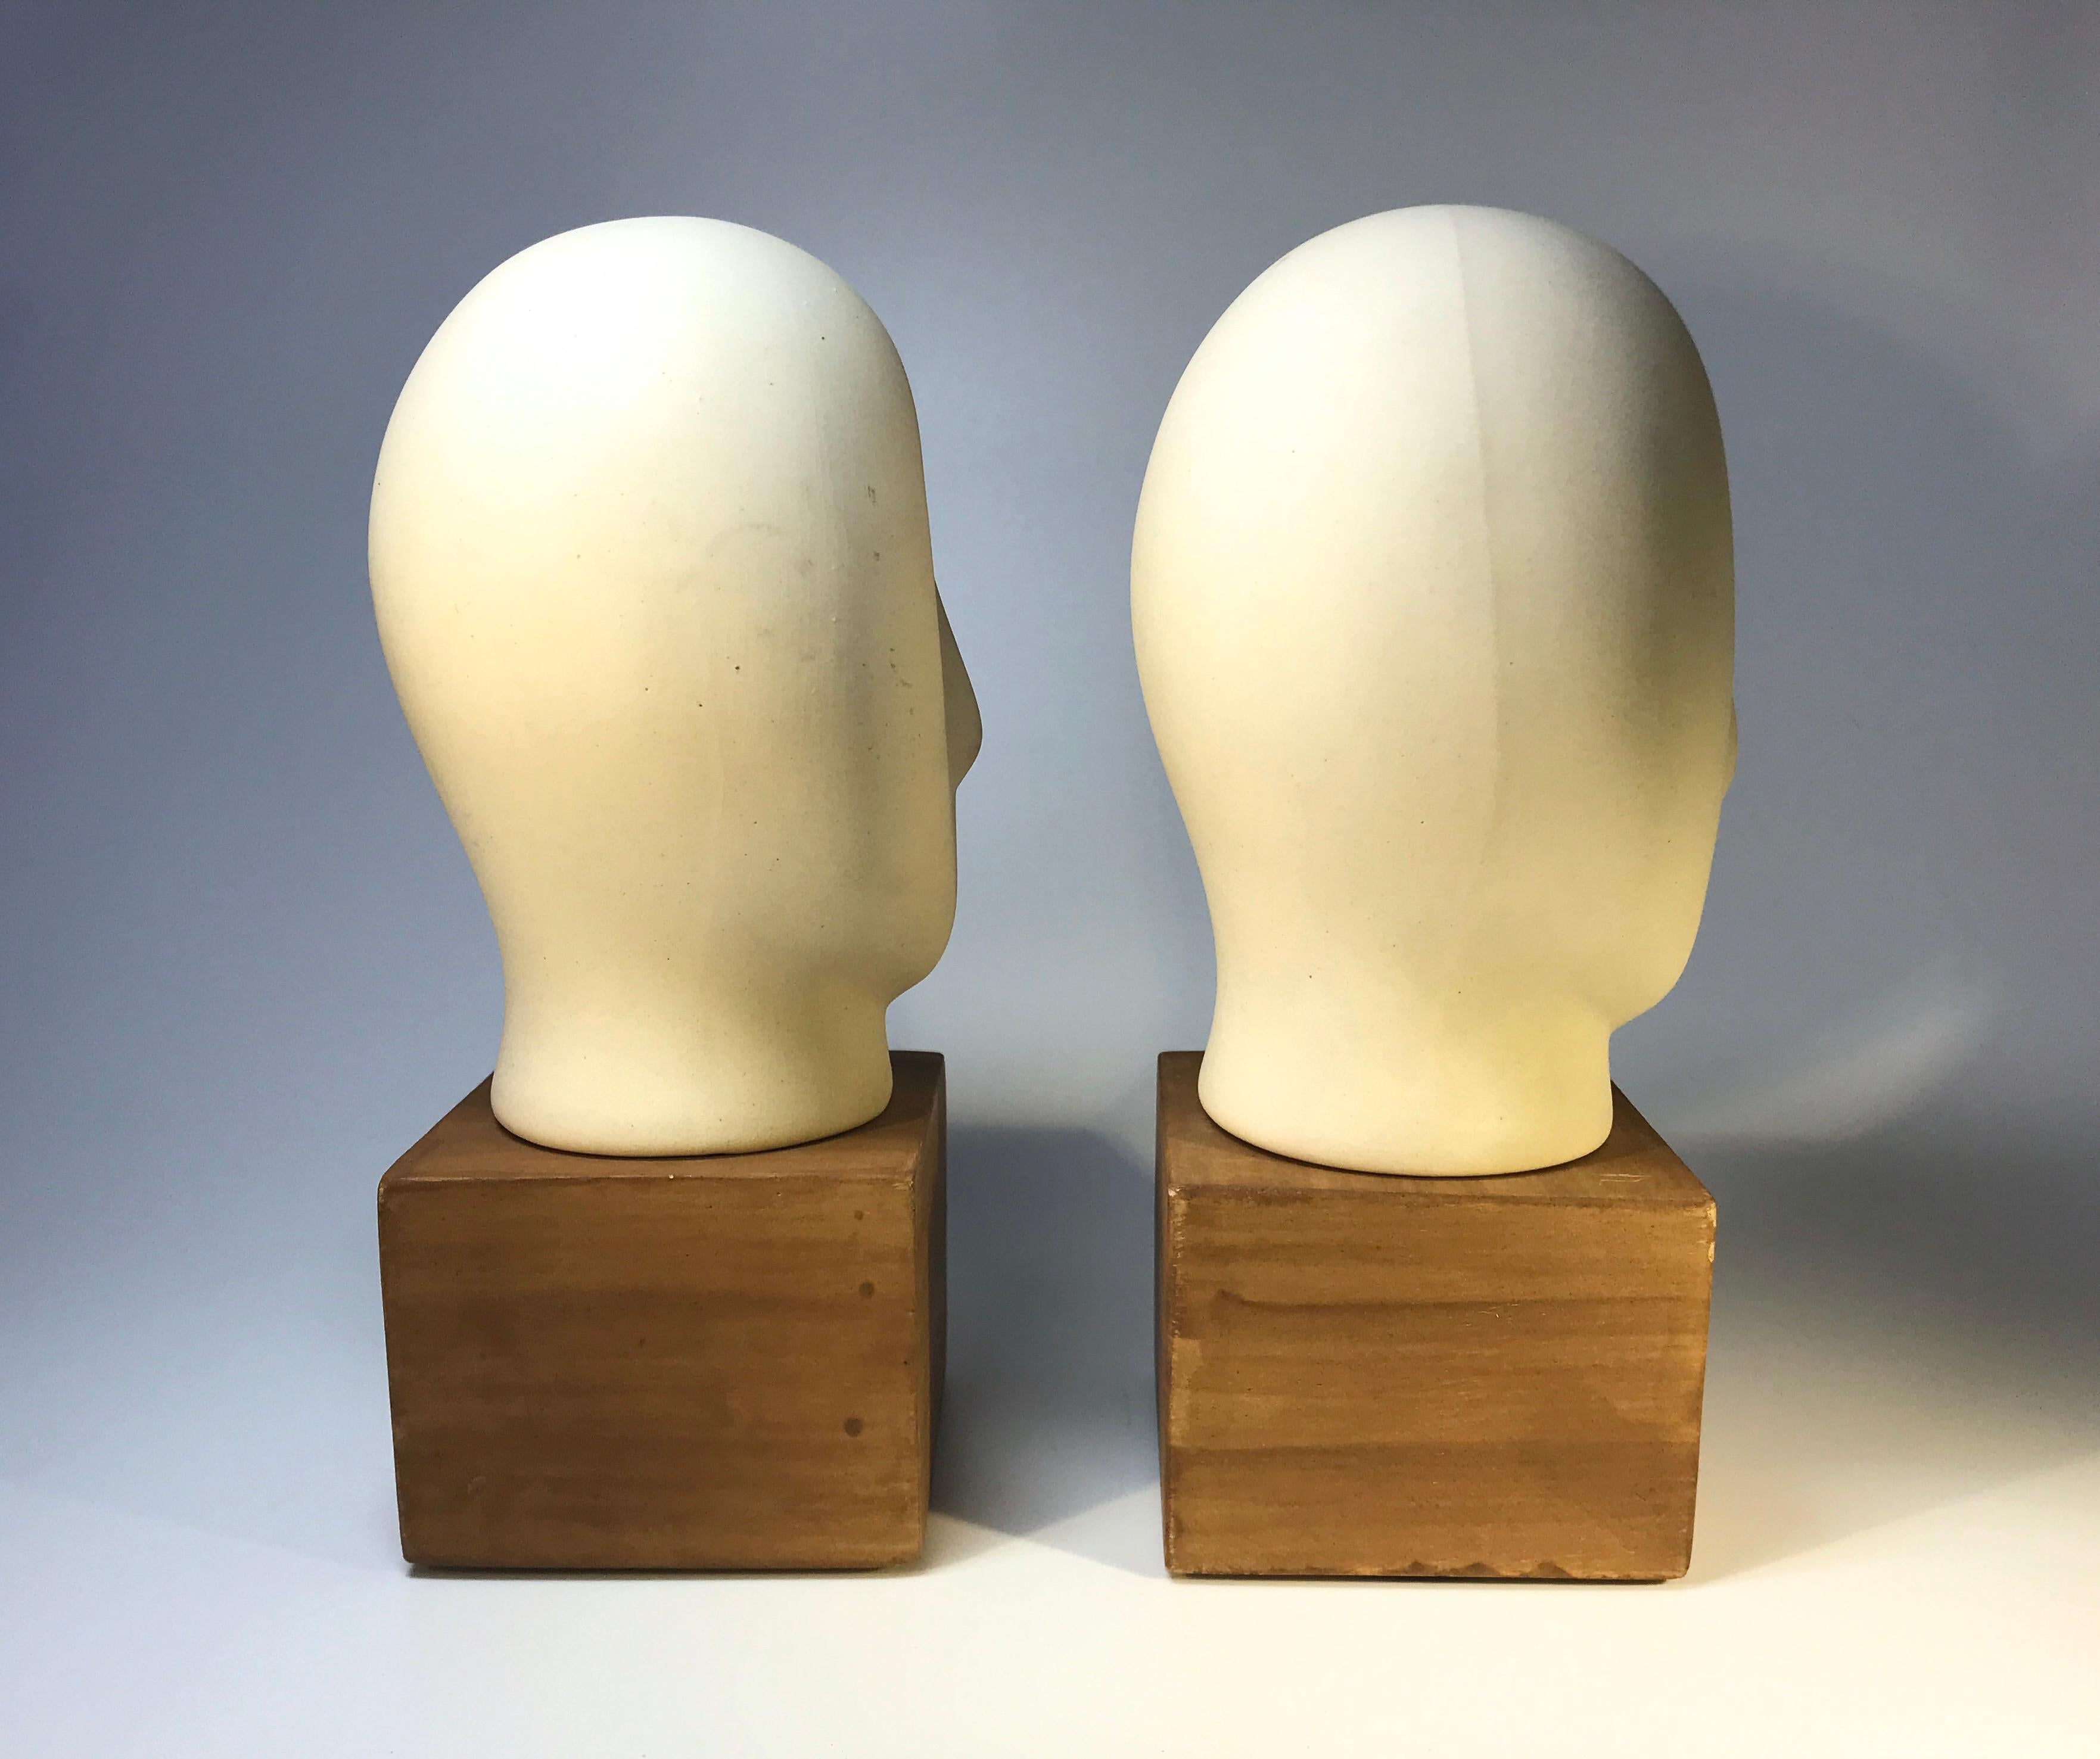 Unknown Pair of Ceramic Cycladic Sculptures Midcentury 1960s Retro